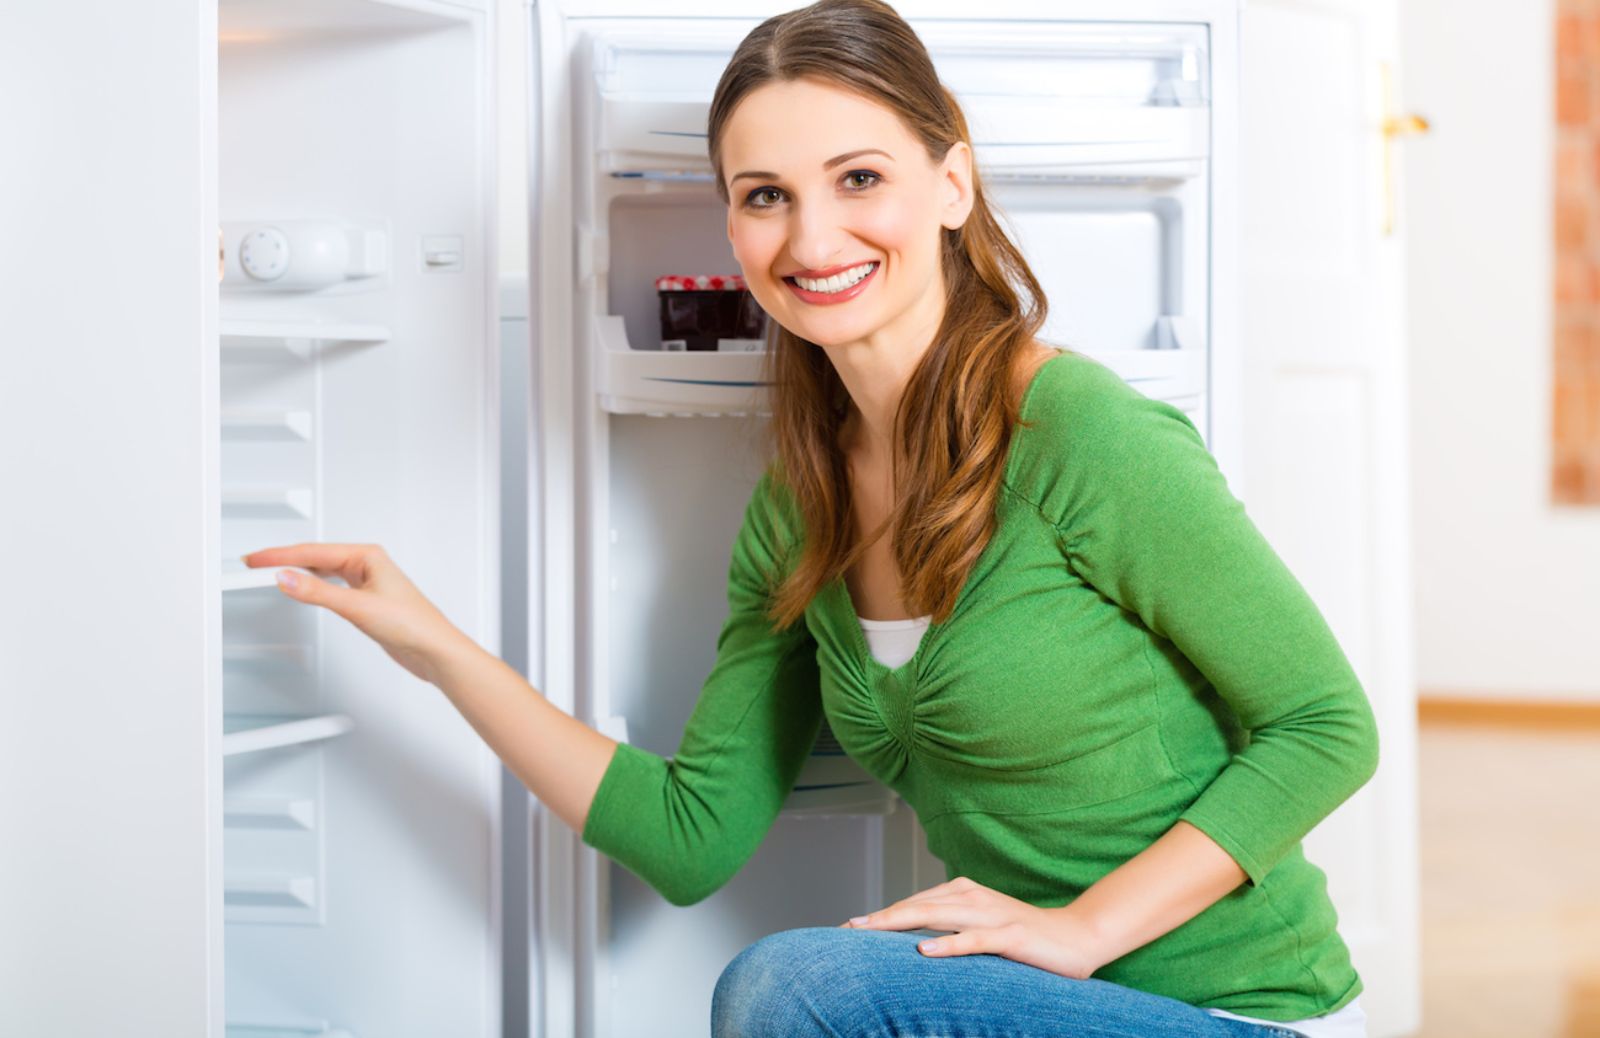 La salute in frigorifero: da Expo 2015 il decalogo per un uso corretto